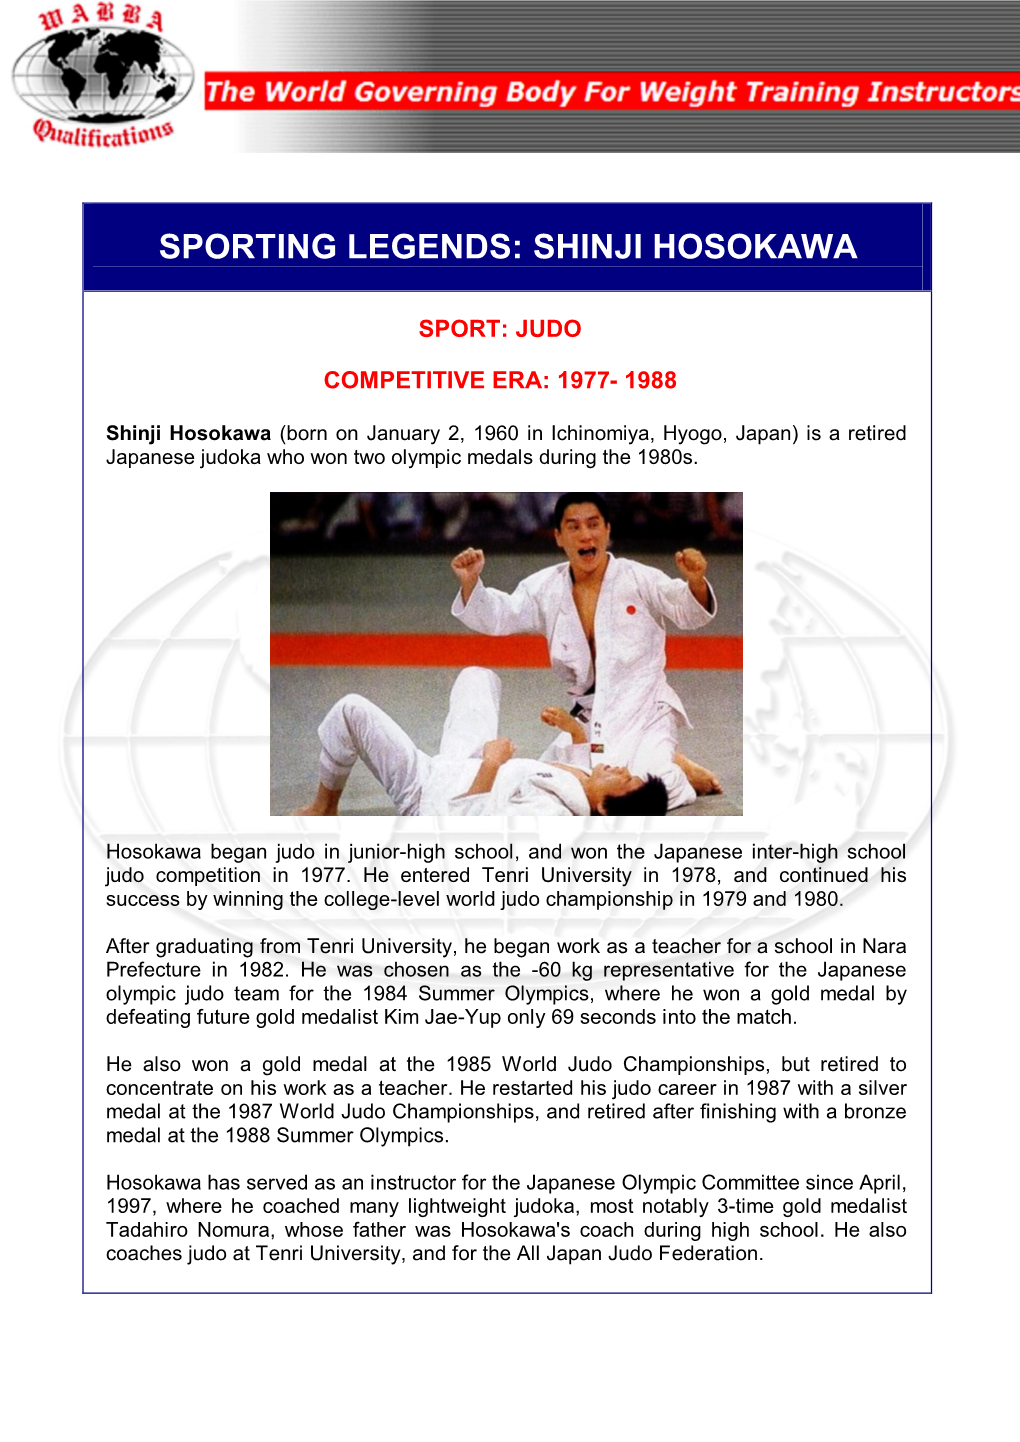 Sporting Legends: Shinji Hosokawa